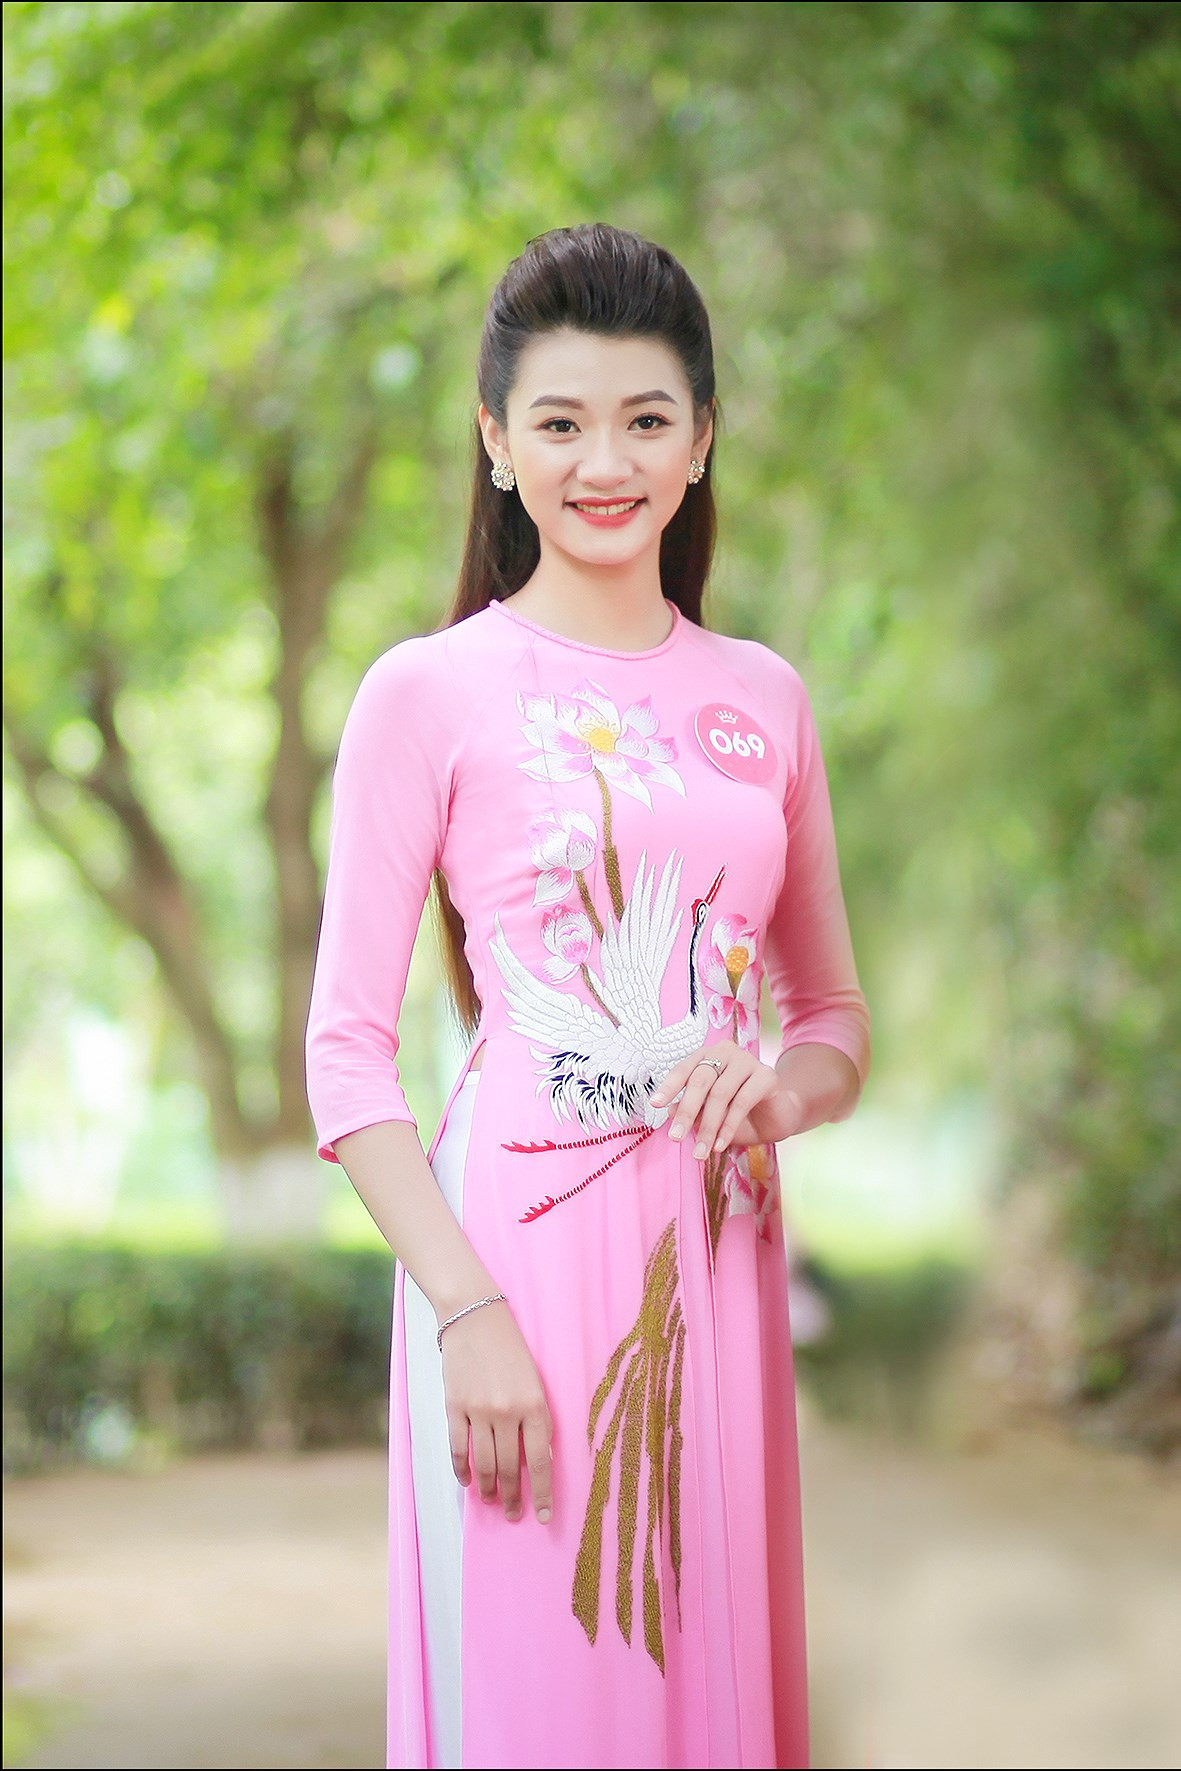 Đinh Phương Mỹ Duyên sinh năm 1996 tại Hà Tĩnh, hiện đang sinh sống tại Phường Trường Thi, TP.Vinh, tỉnh Nghệ An. Hiện đang là sinh viên năm thứ 3 trường Đại học Kinh tế Nghệ An.